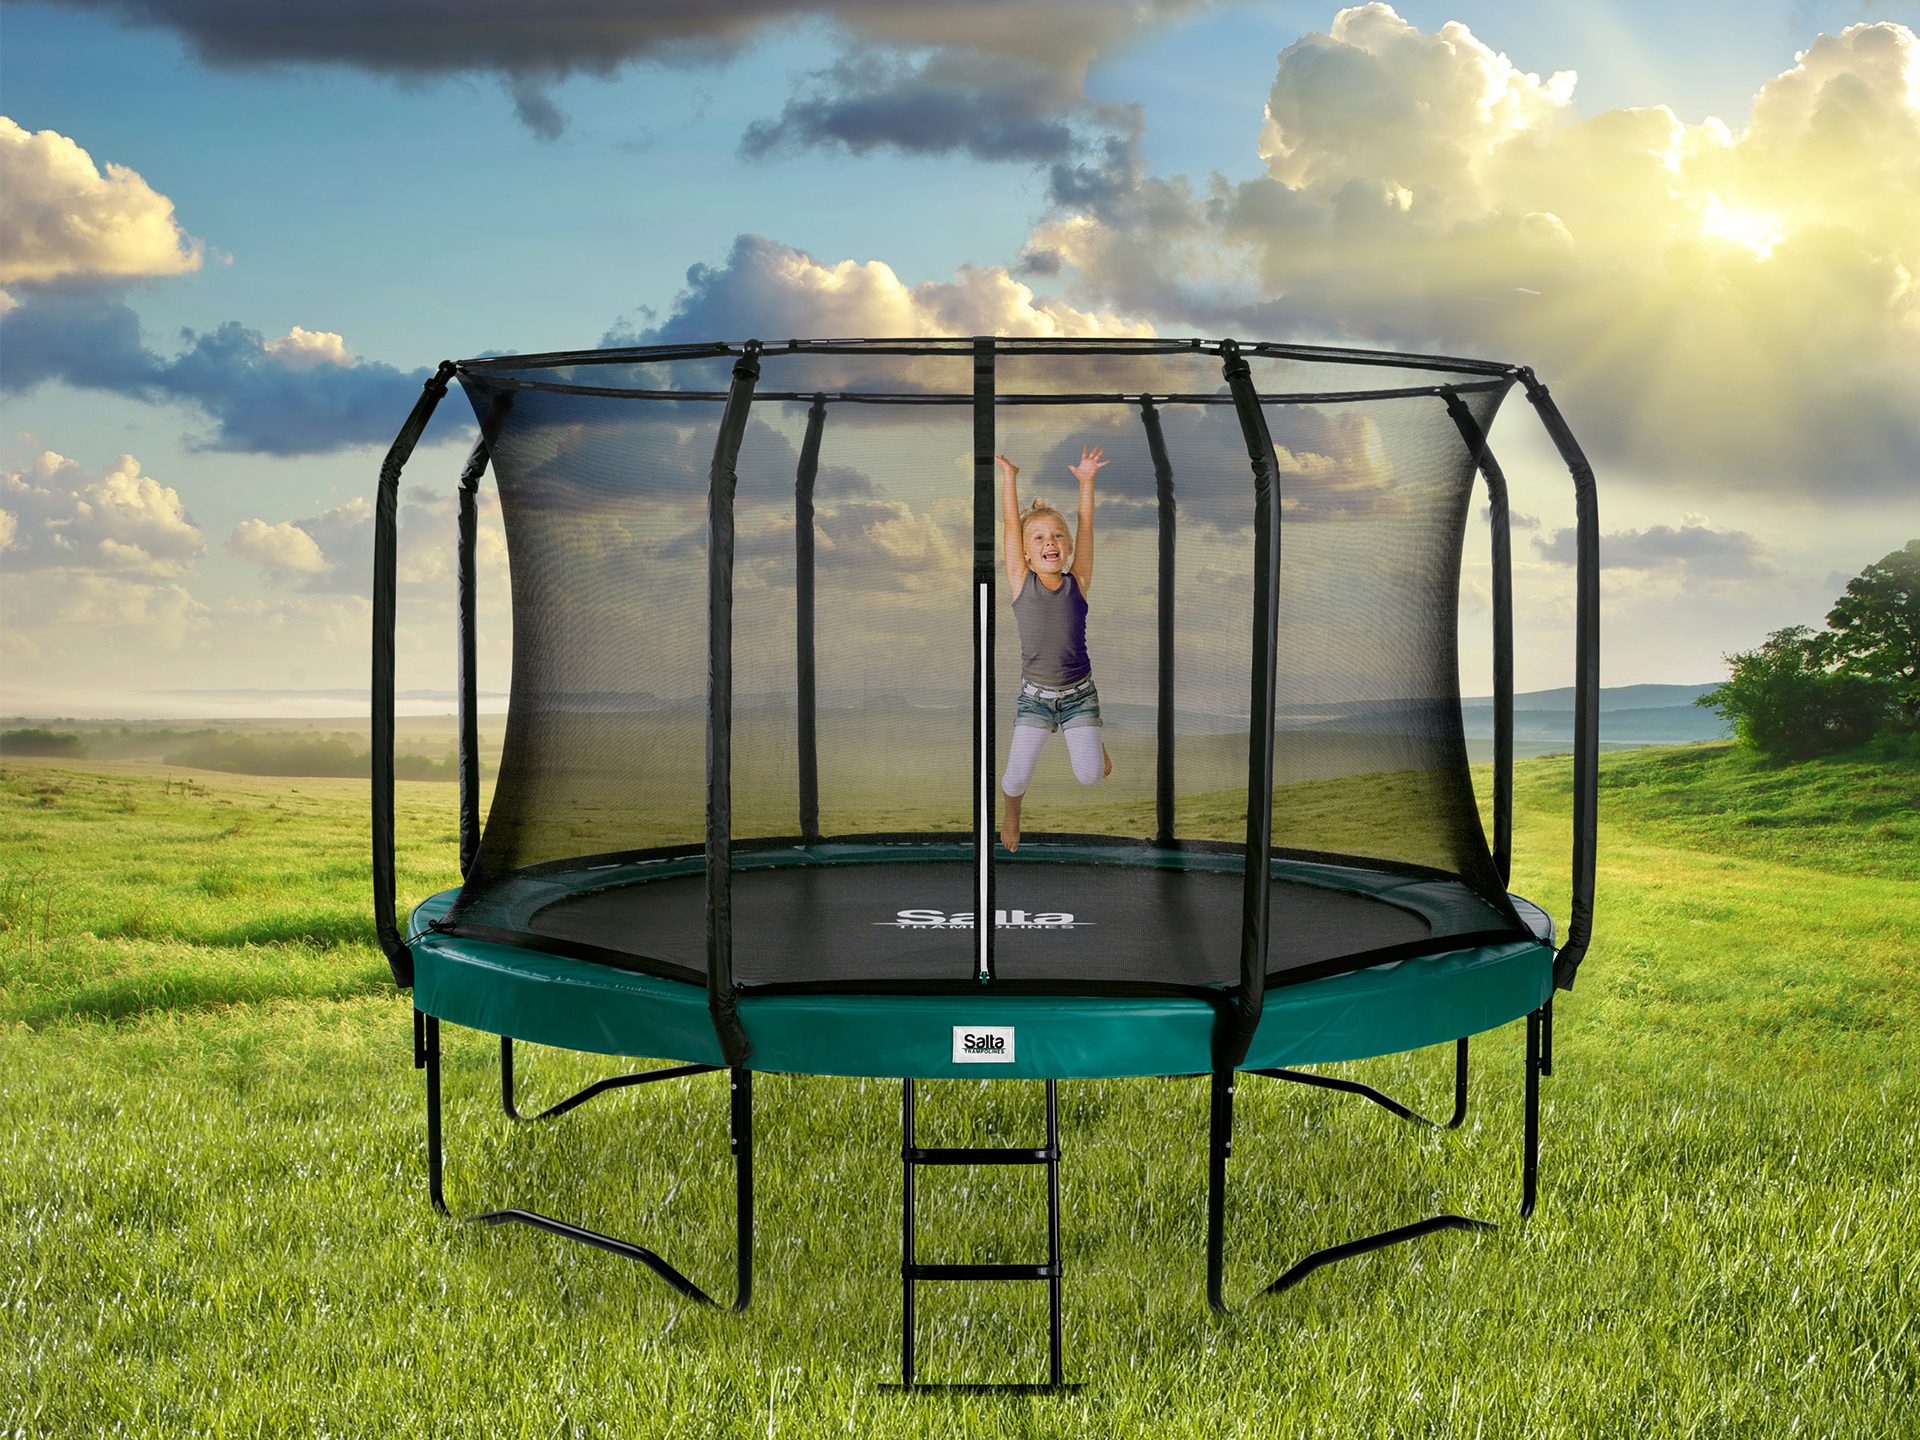 Een hoge trampoline is voorzien van een veiligheidsnet